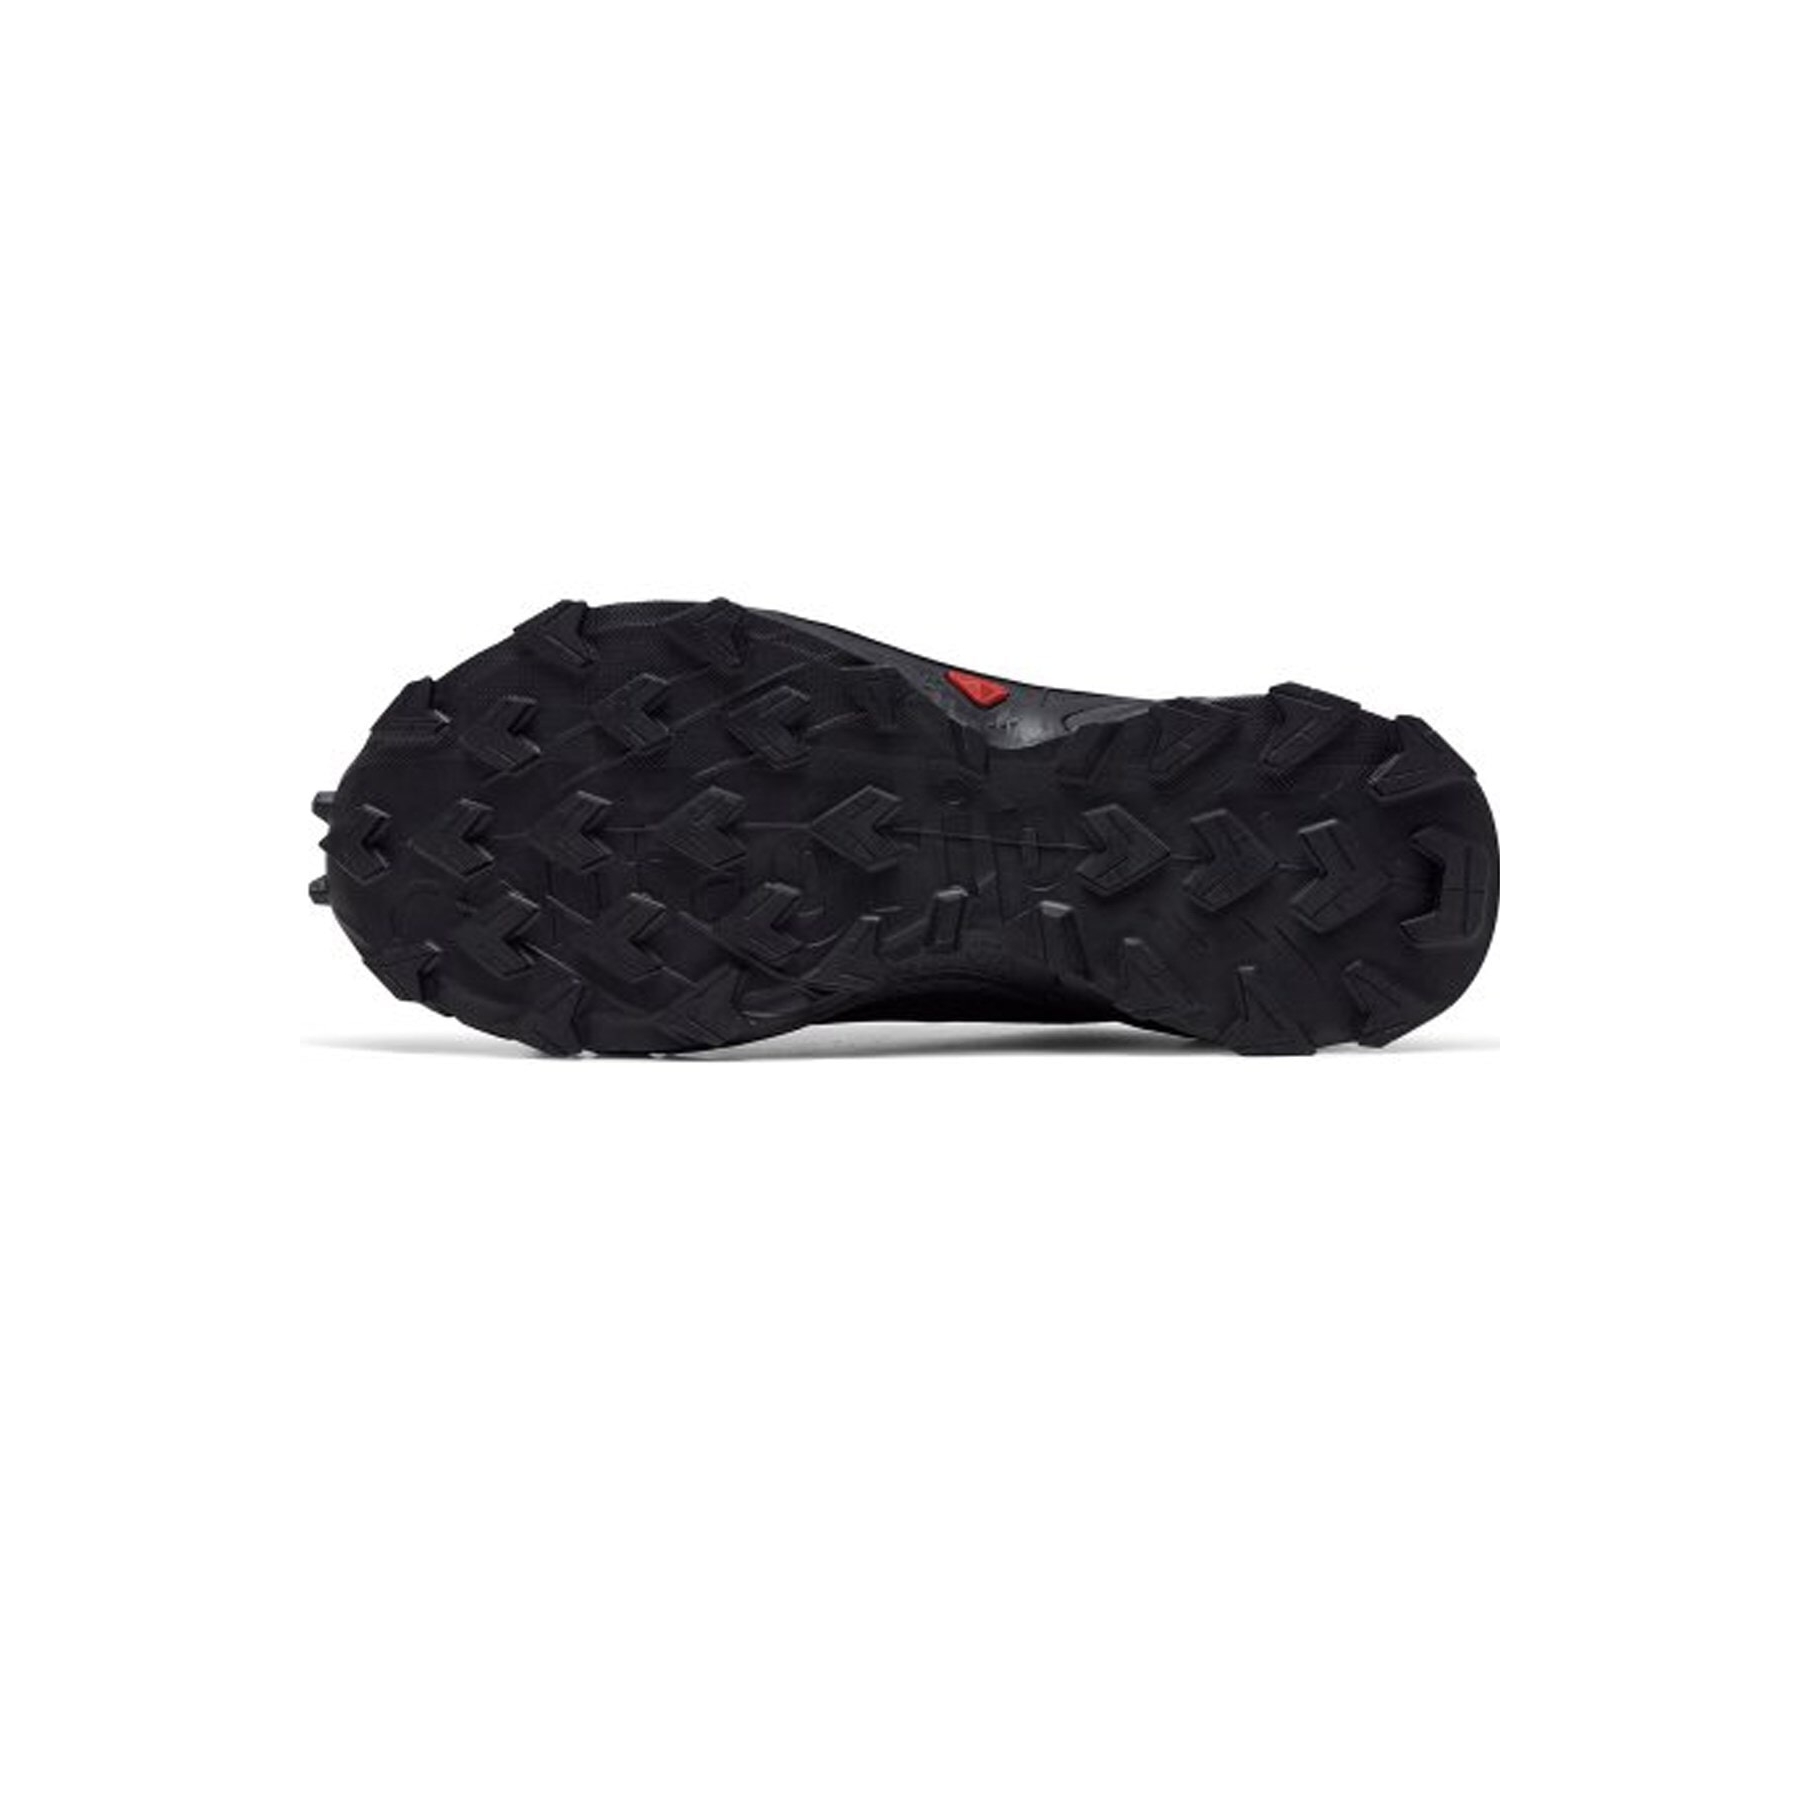 Salomon Supercross 4 Goretex Kadın Siyah Outdoor Ayakkabı (L41733900)